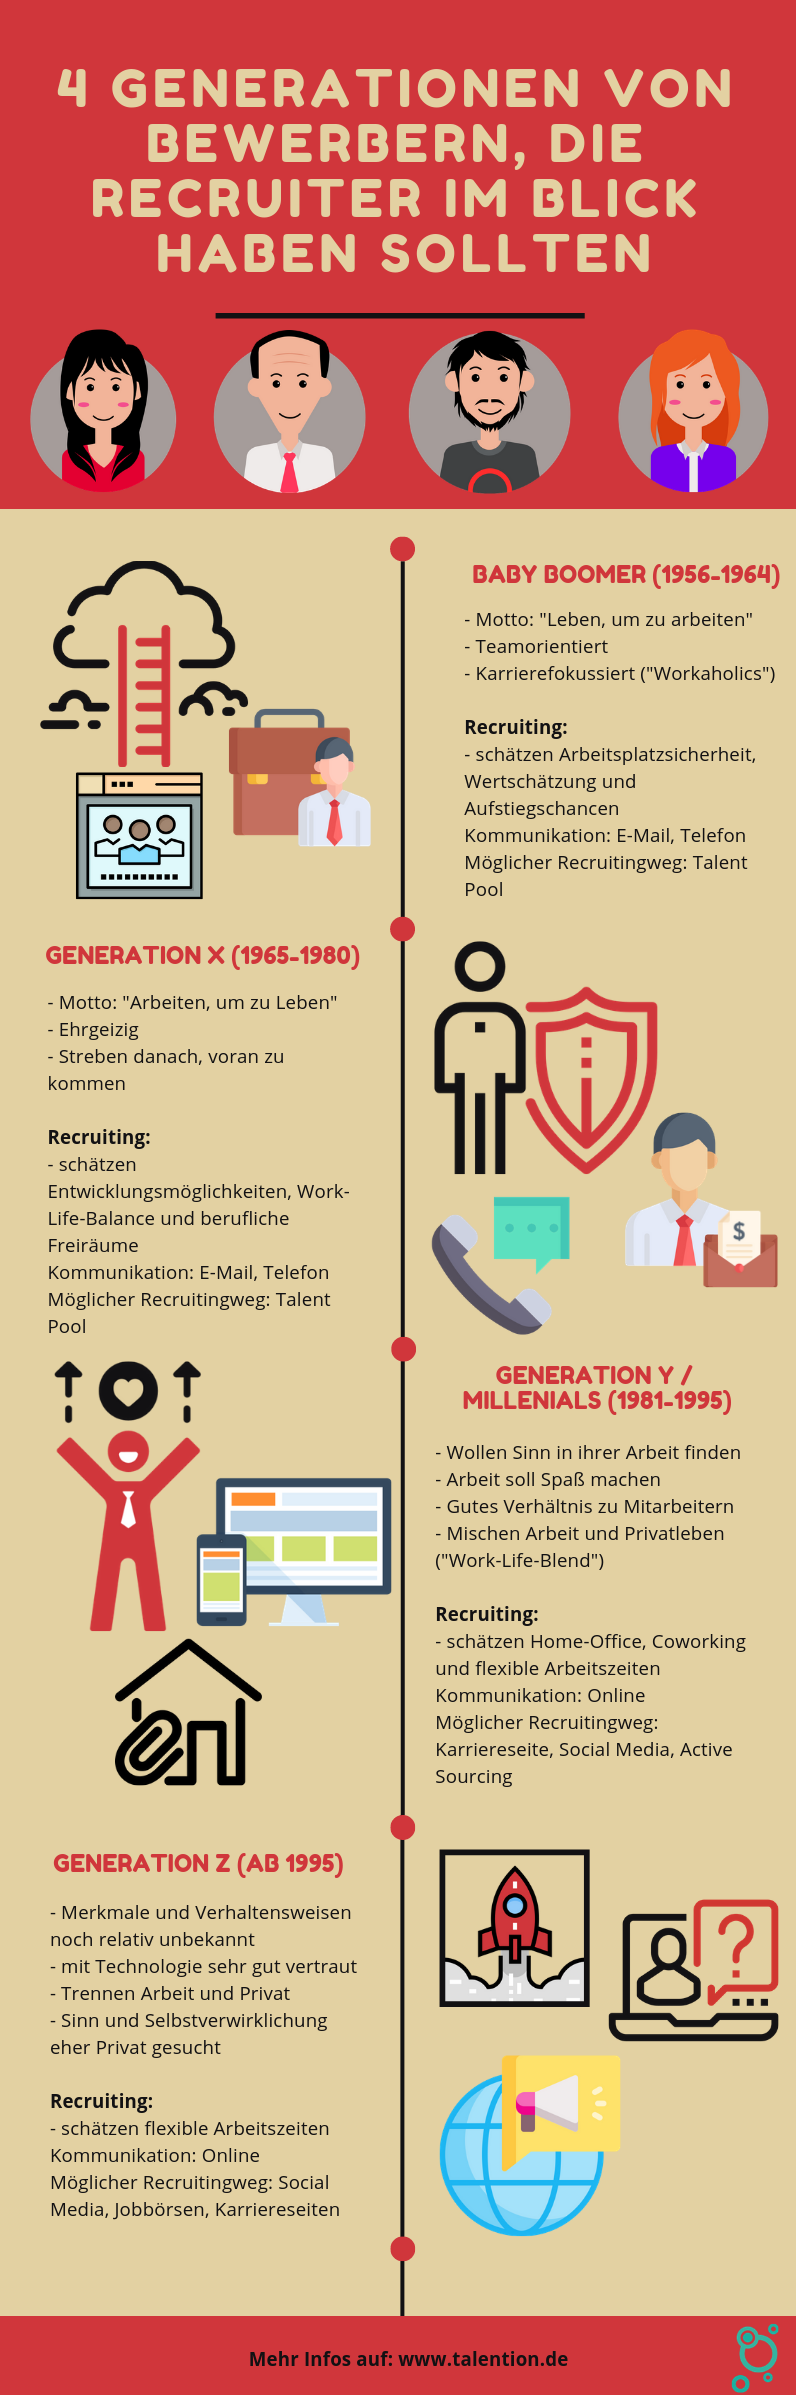 Infografik, 4 Generationen von Bewerbern